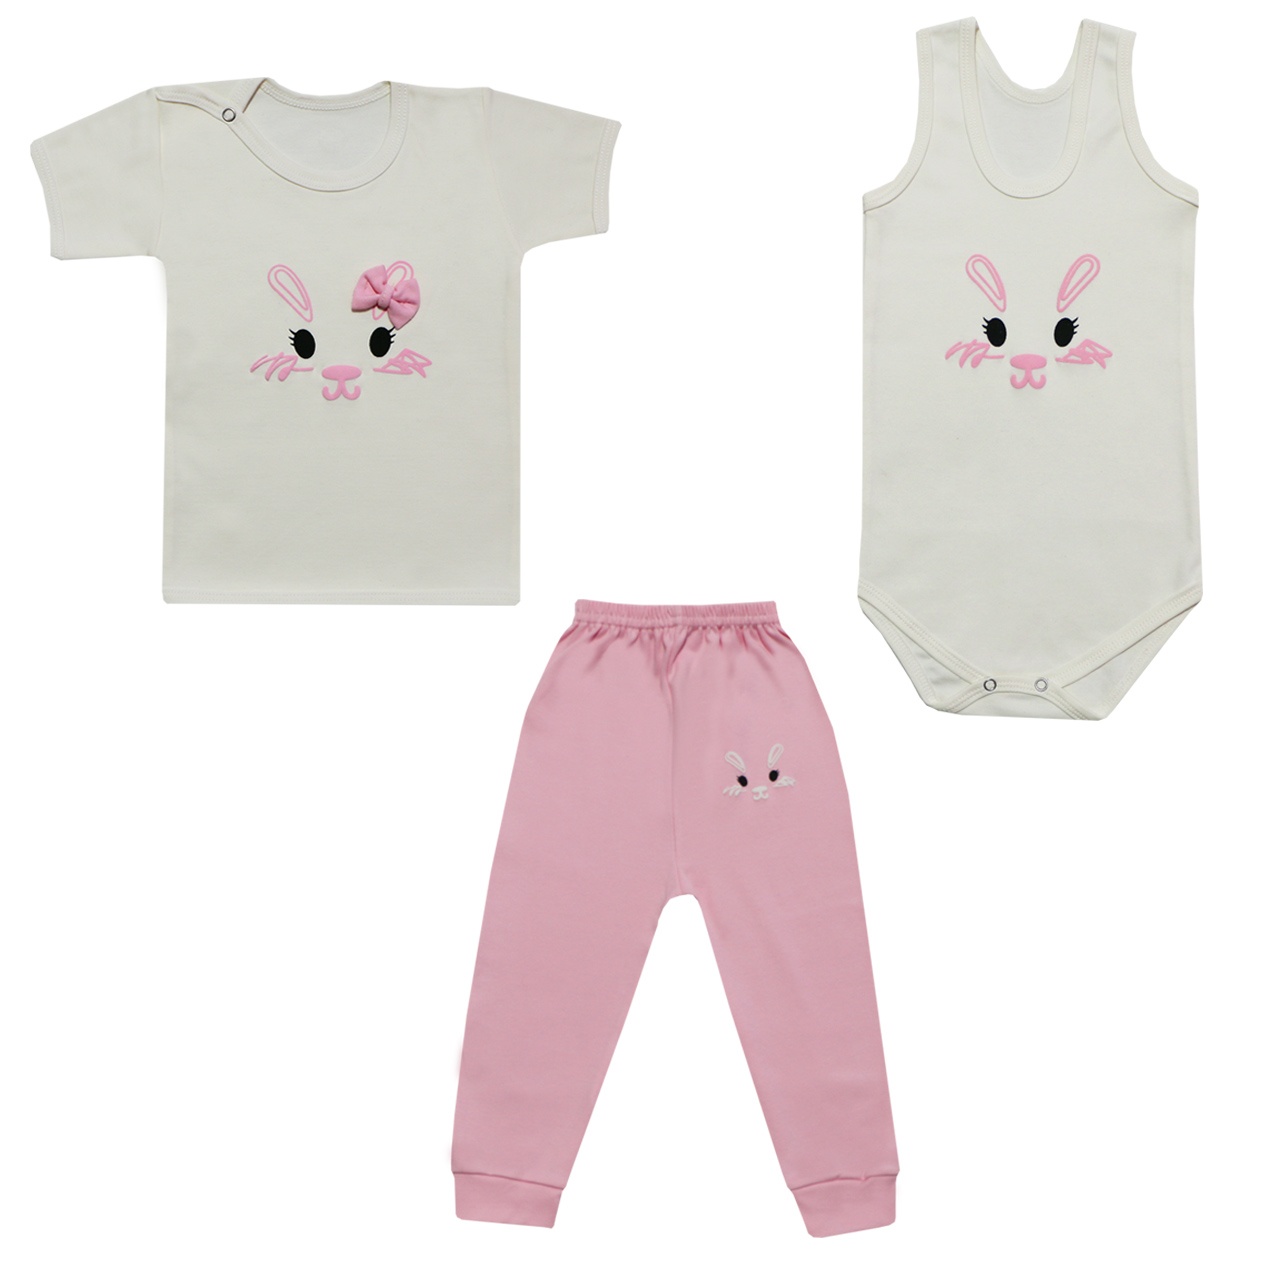 ست 3 تکه لباس نوزادی دخترانه طرح خرگوش کد 12-32